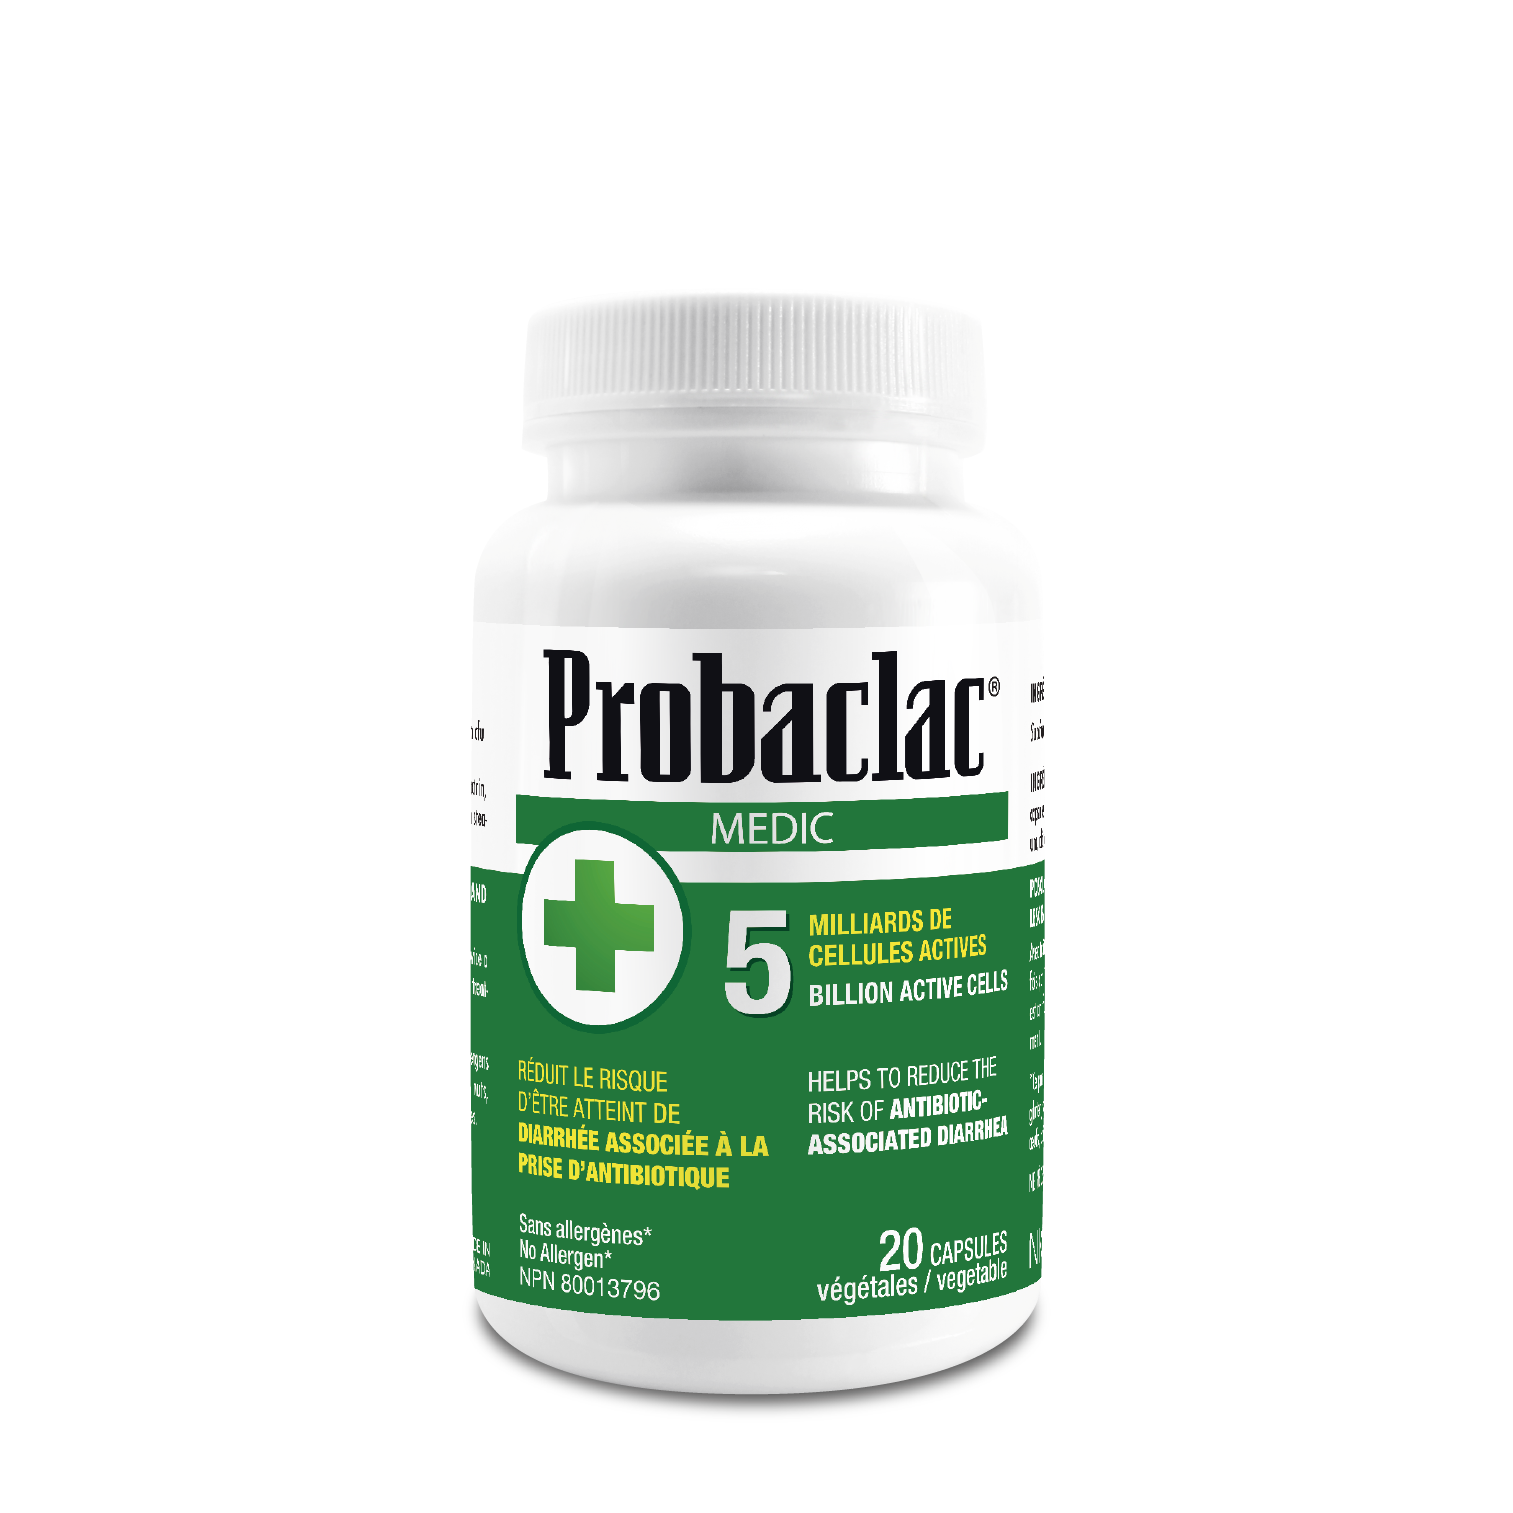 Probiotiques Medic Probaclac